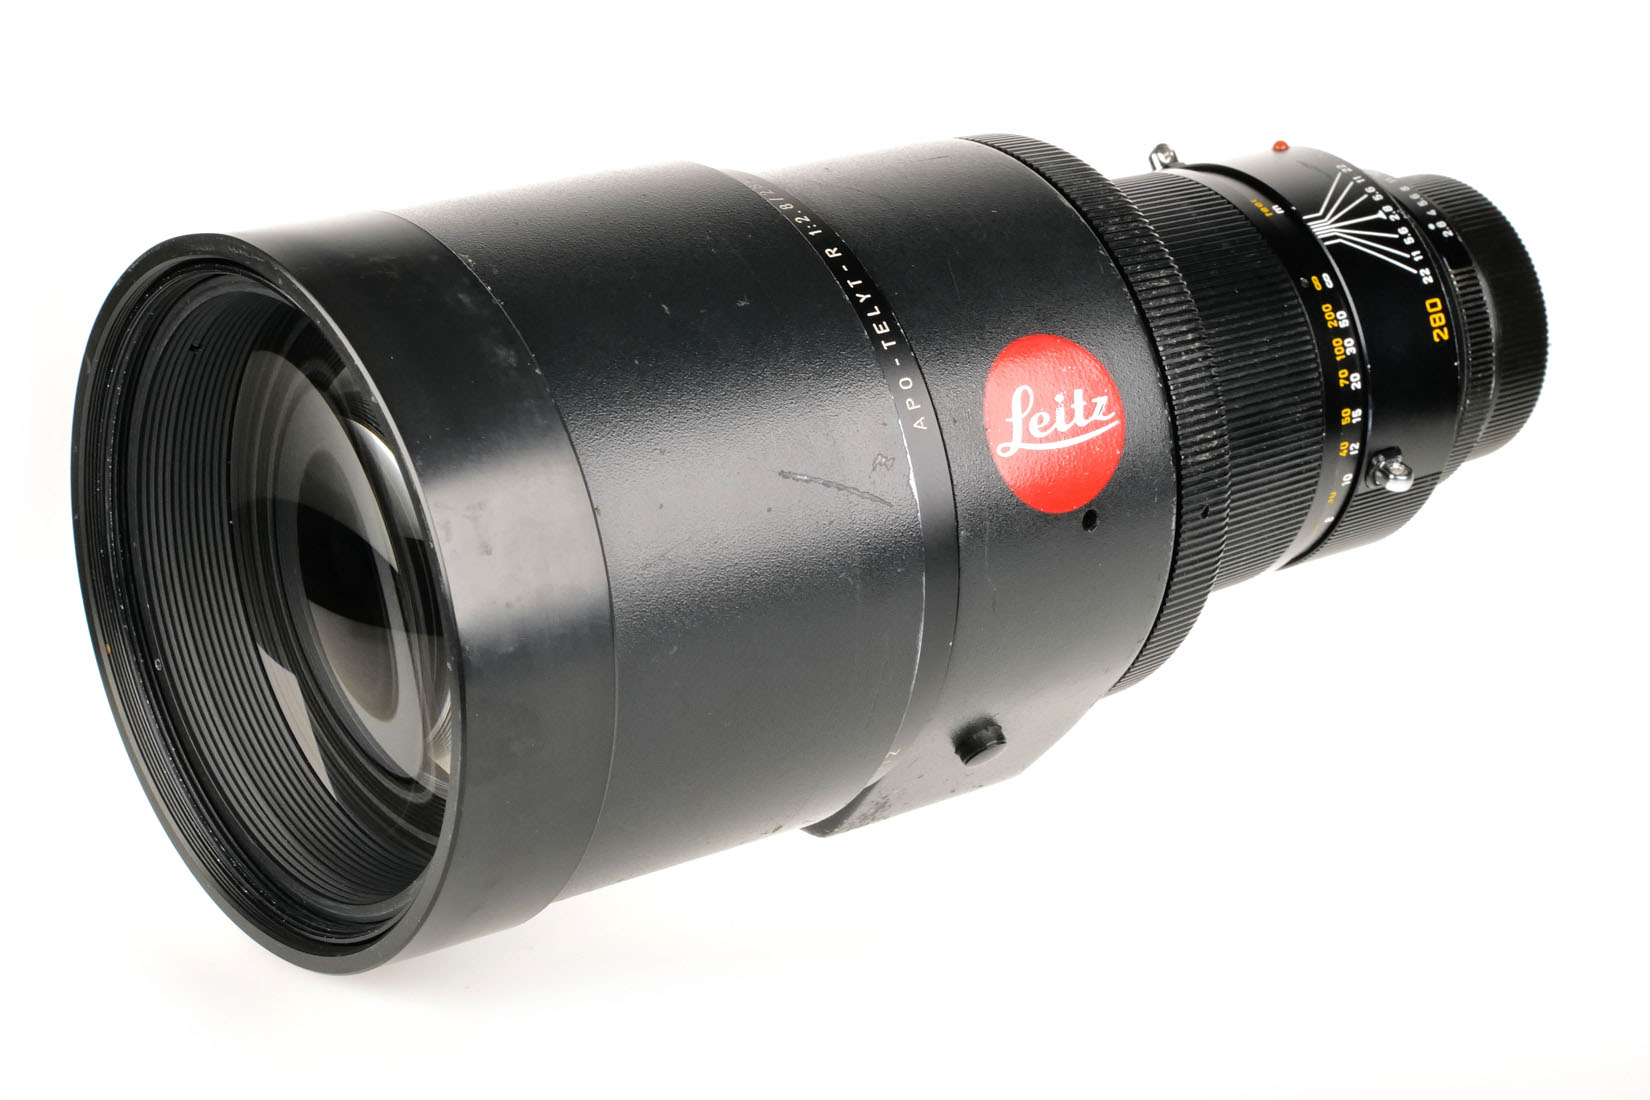 Leica Apo-Telyt-R 11245 2,8/280mm